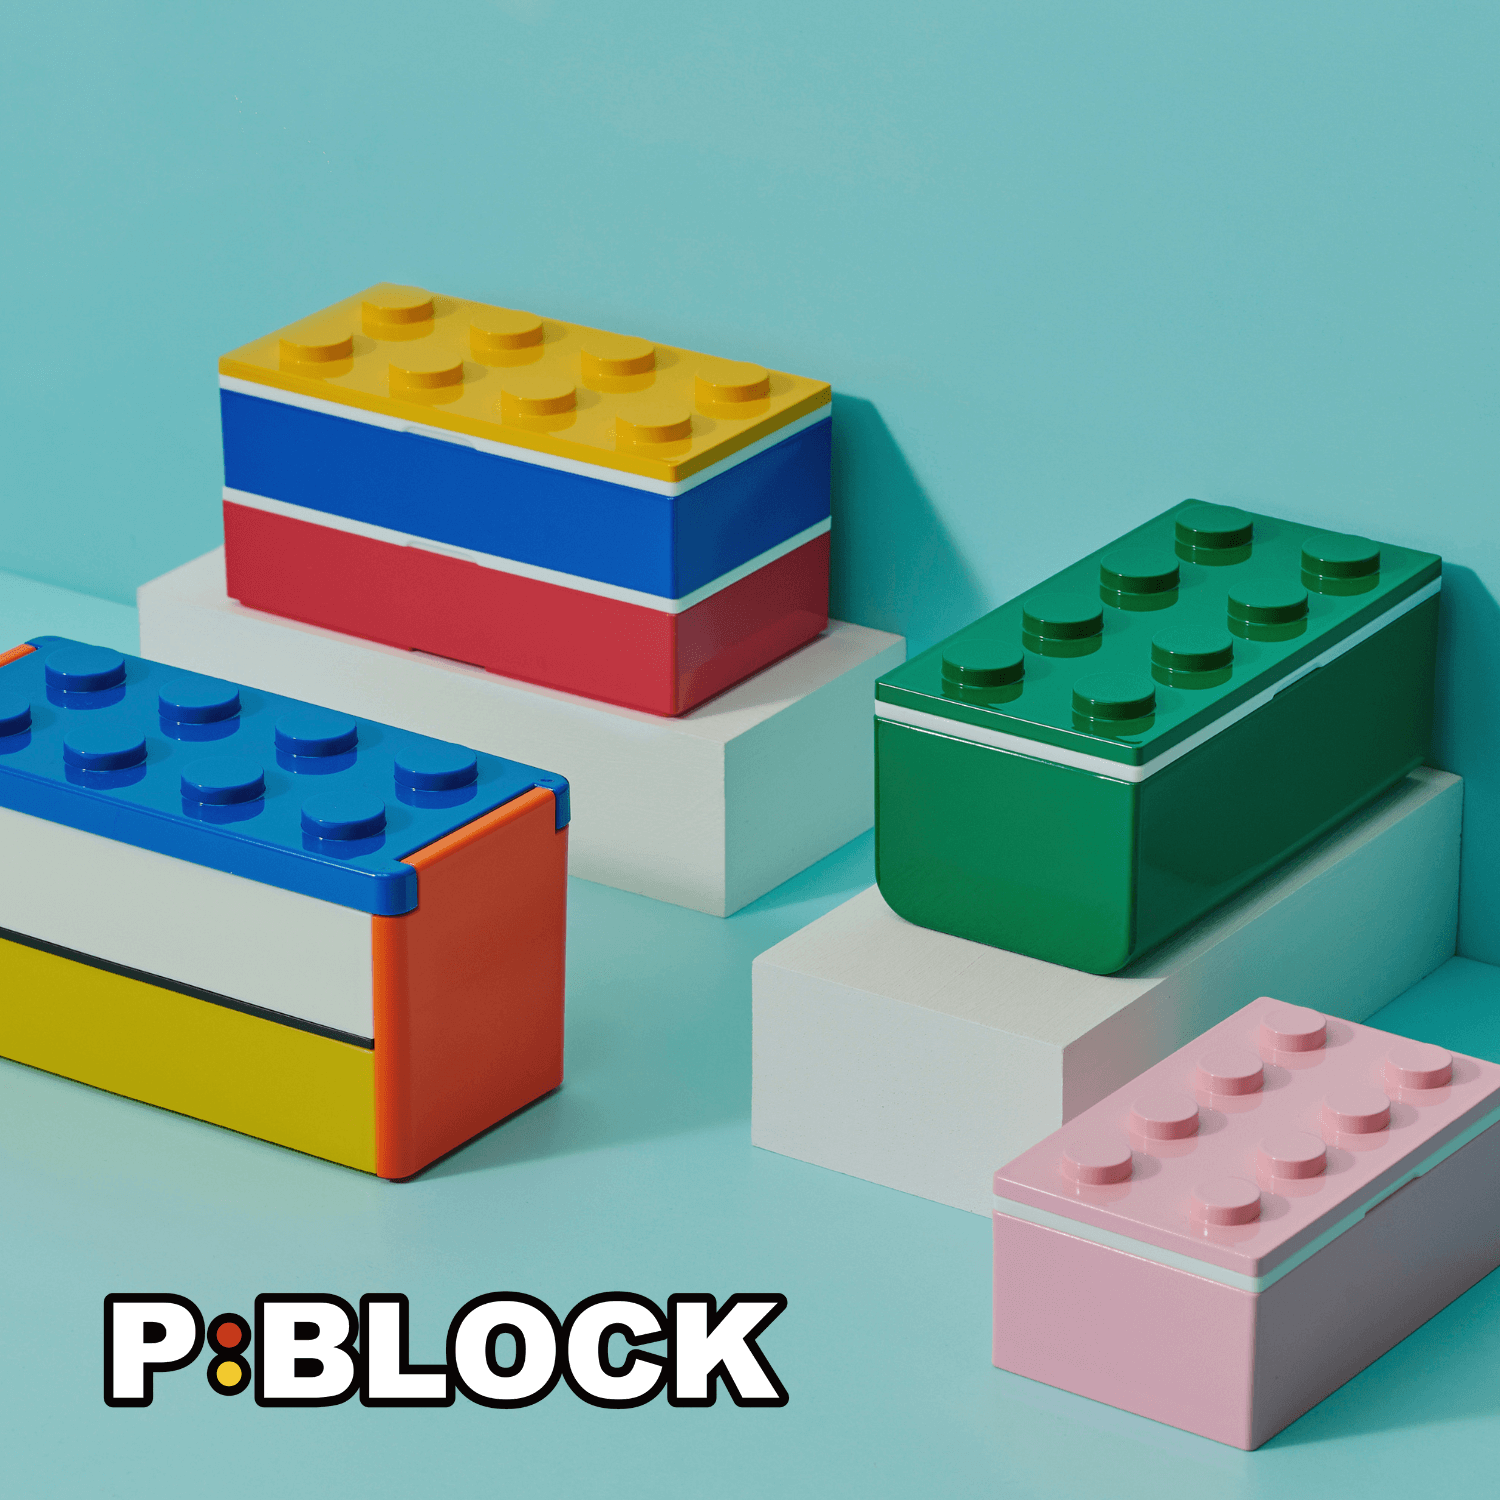 P:BLOCK